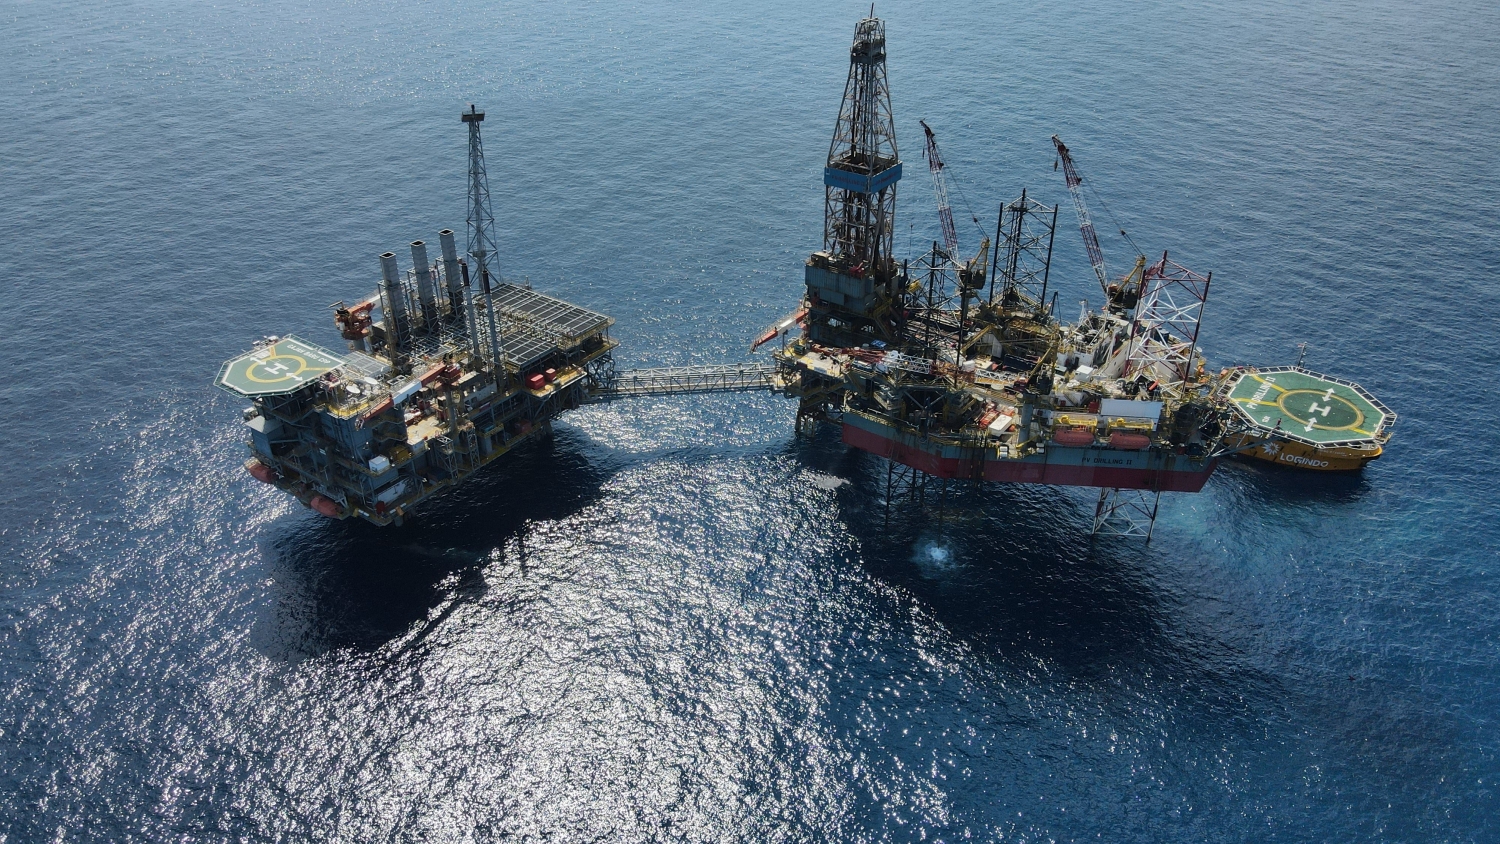 PVD Drilling Division – 15 năm quản lý và điều hành giàn khoan dầu khí (kỳ 1)